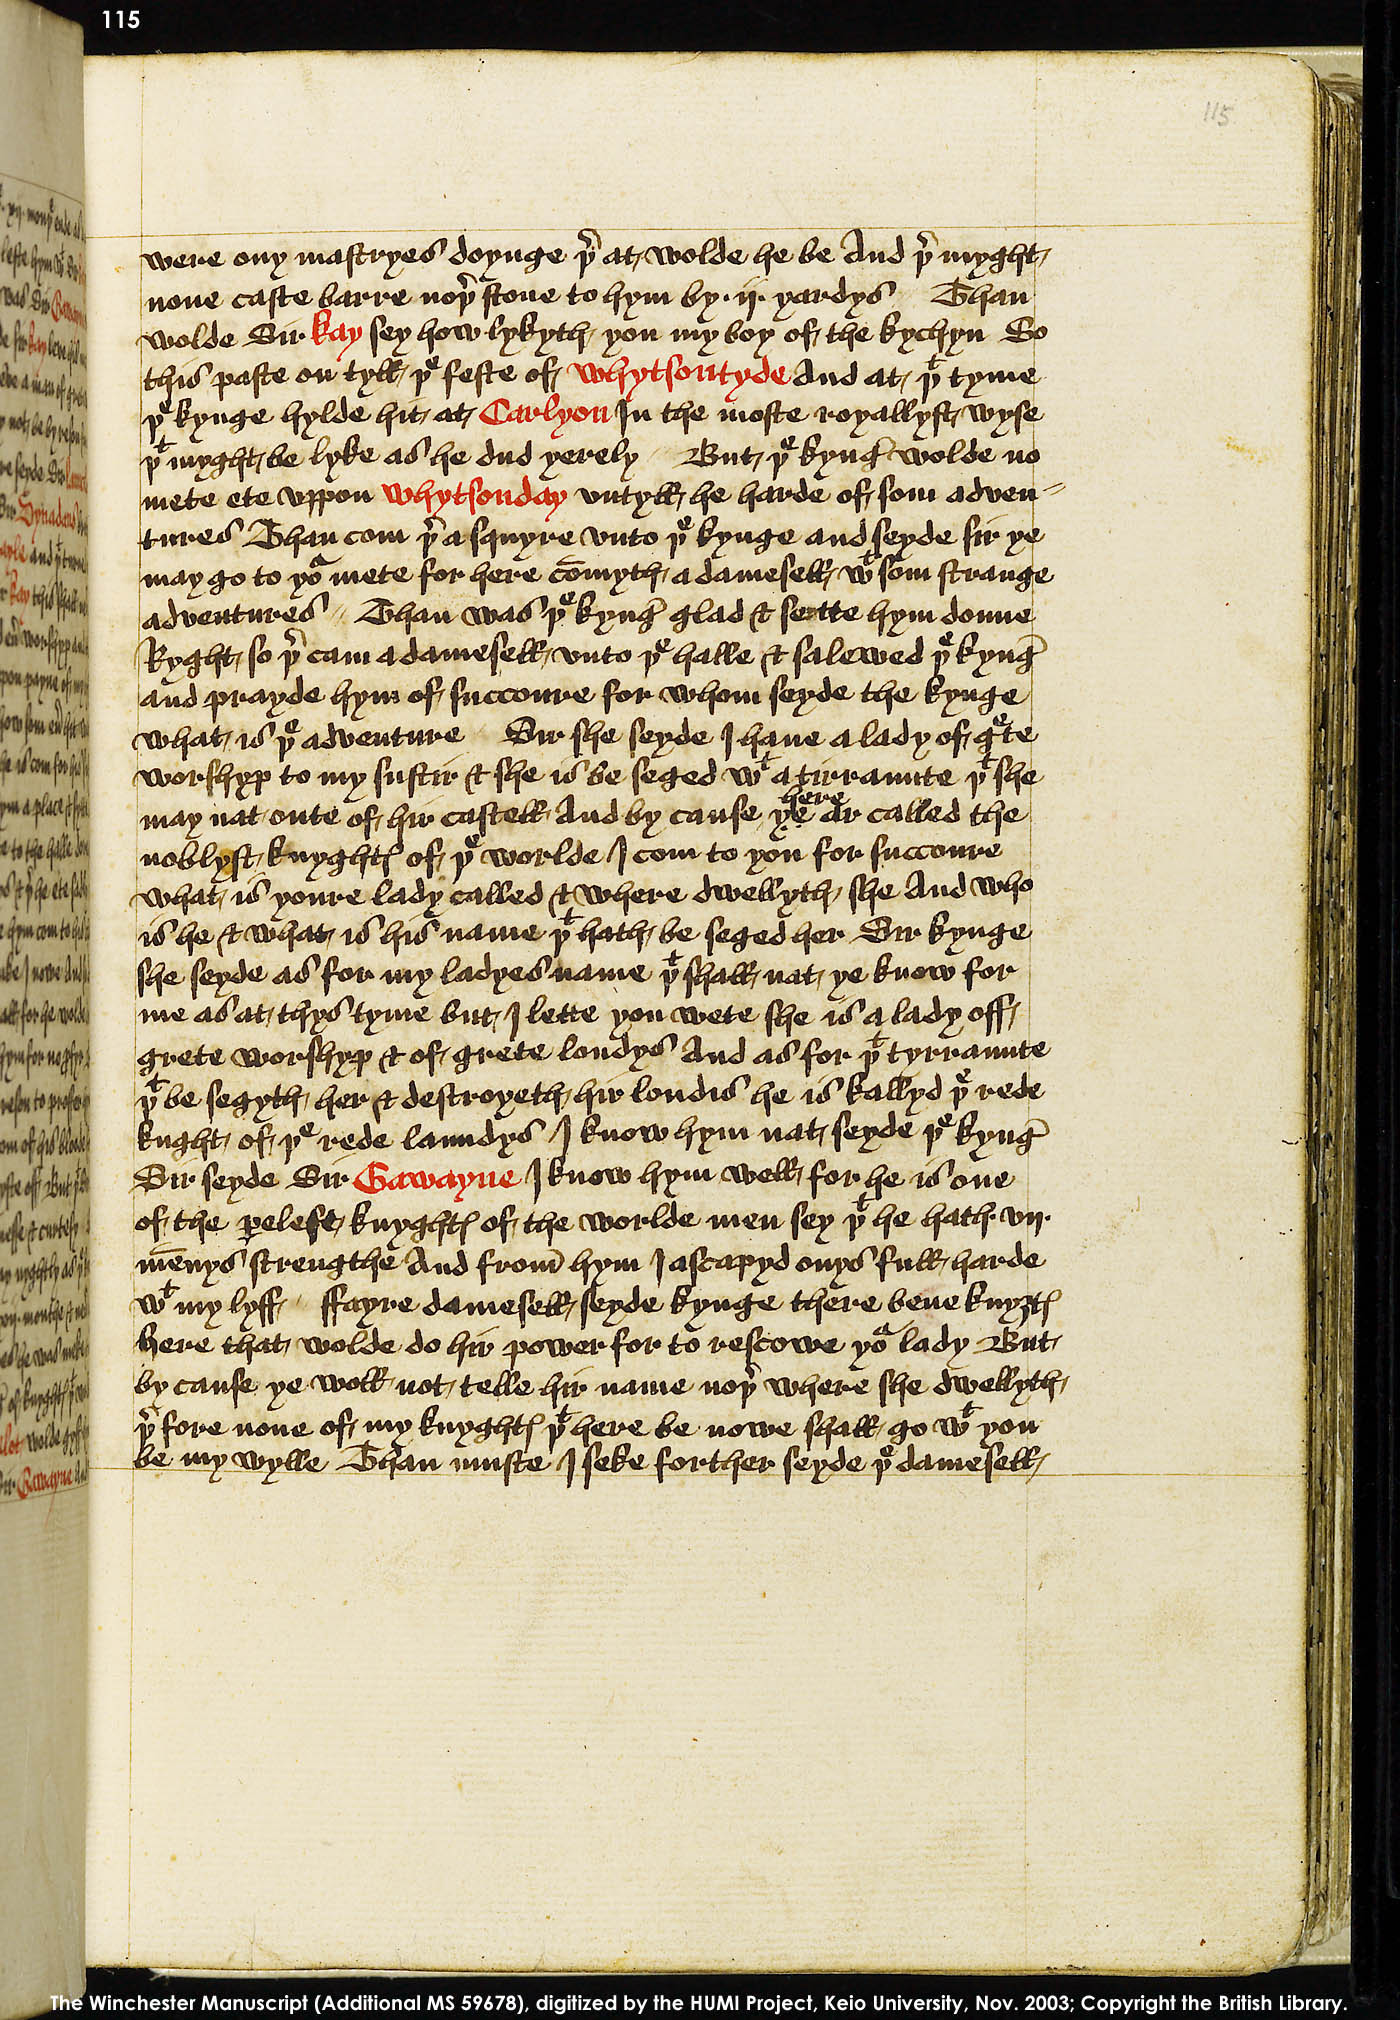 Folio 115r